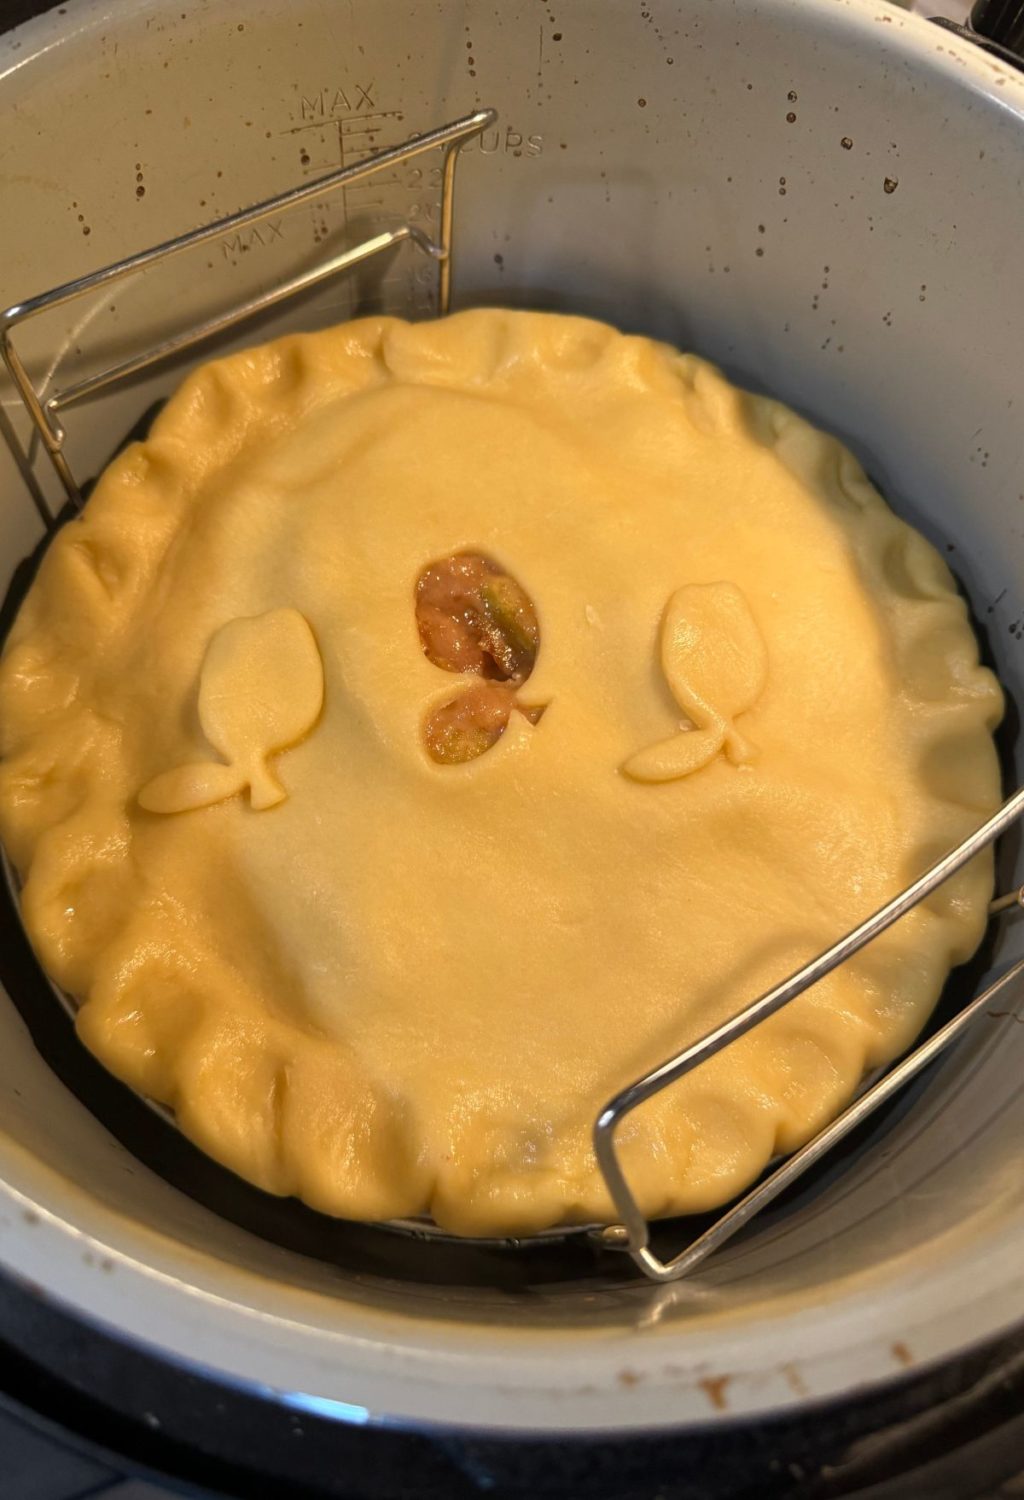 A pie in a pot.